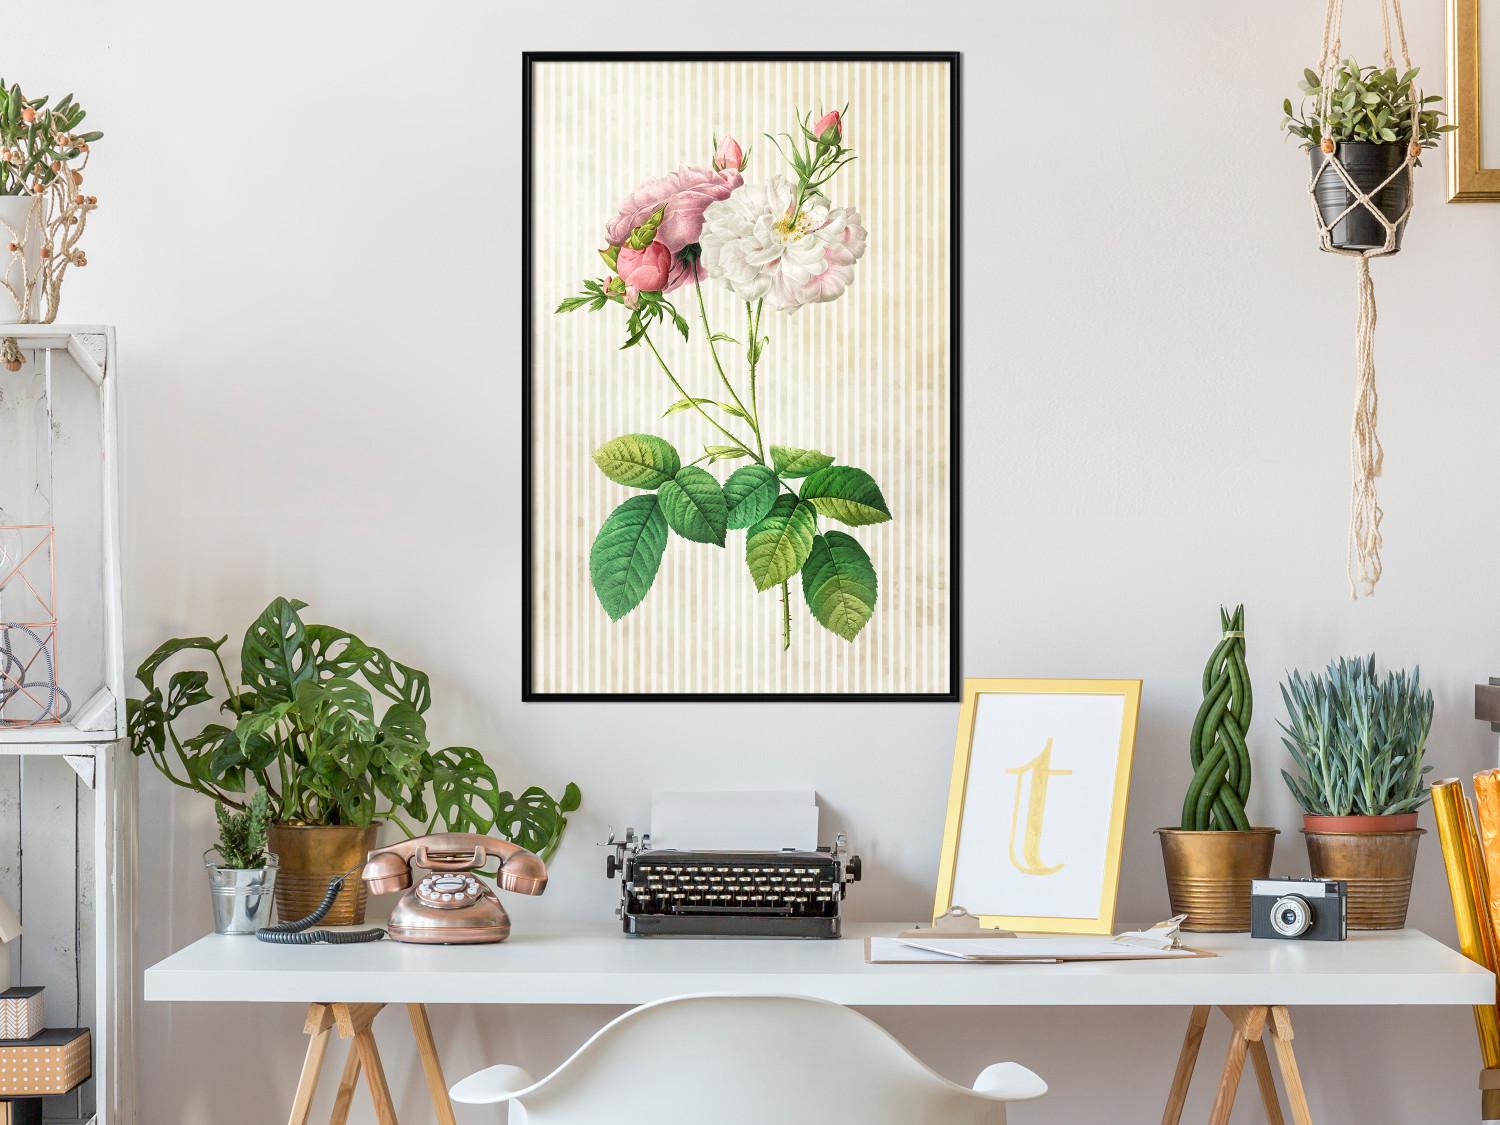 Set de poster Chic floral: composición colorida con flores y rayas beige